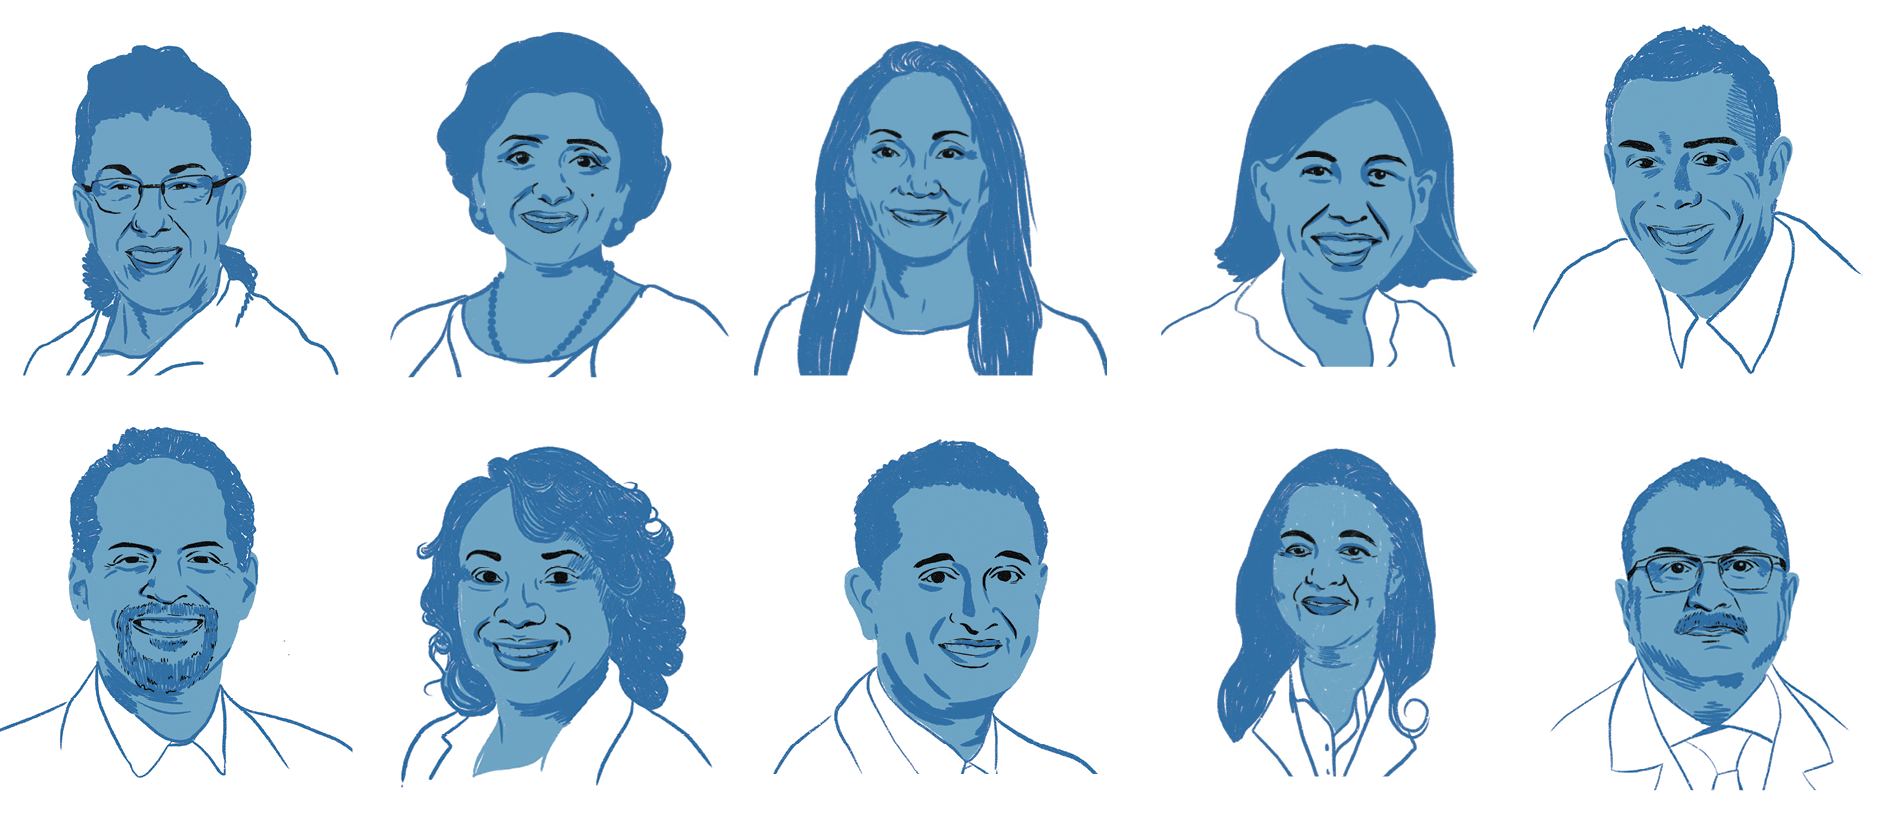 From left to right: Barbara Gower, Ph.D., Ambika Ashraf, M.D., Maria Grant, M.D., Andrea Cherrington, M.D., MPH, Gareth Dutton, Ph.D., Orlando Gutierrez, M.D., Monica Baskin, Ph.D., Tapan Mehta, Ph.D., Rita Basu, M.D., Ananda Basu, M.D.